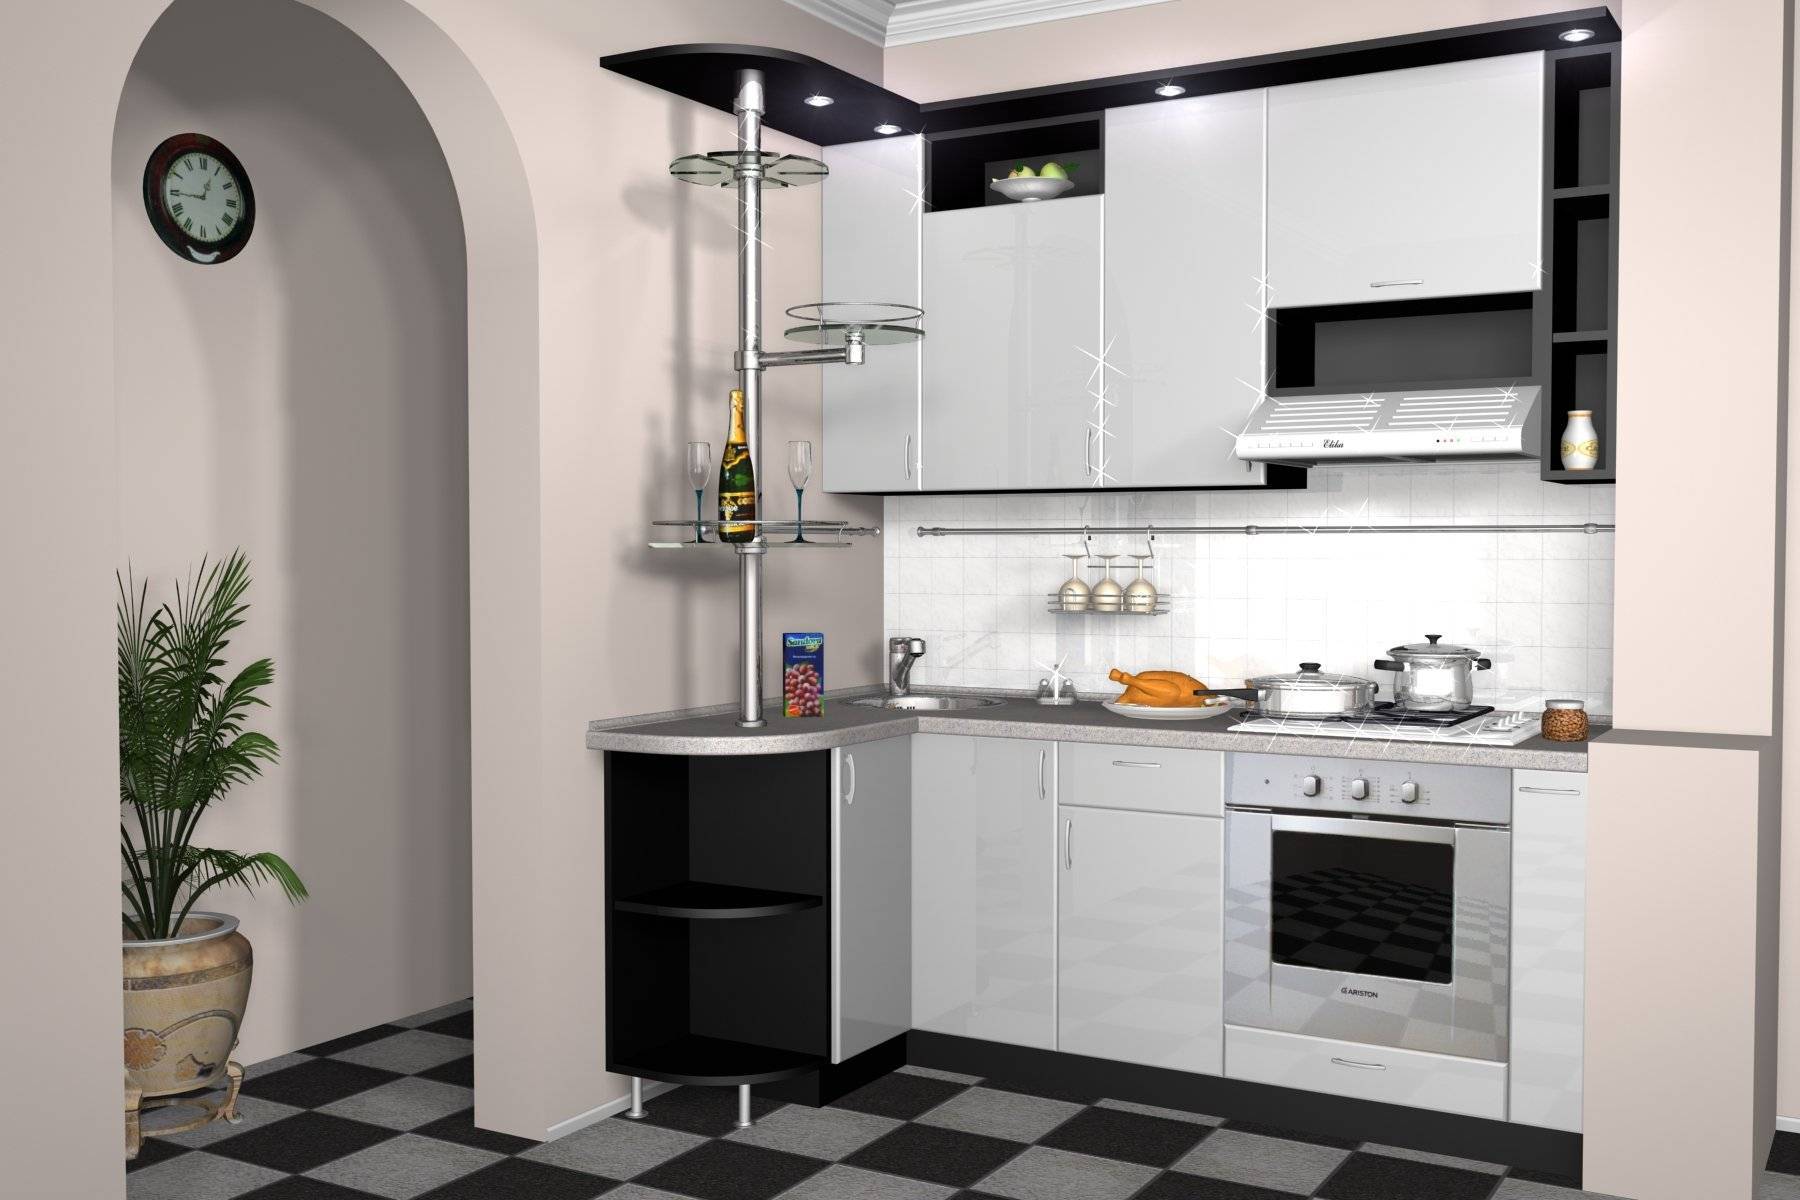 Дизайн малогабаритной кухни (100+ фото): примеры интерьера маленьких кухонь и угловой планировки